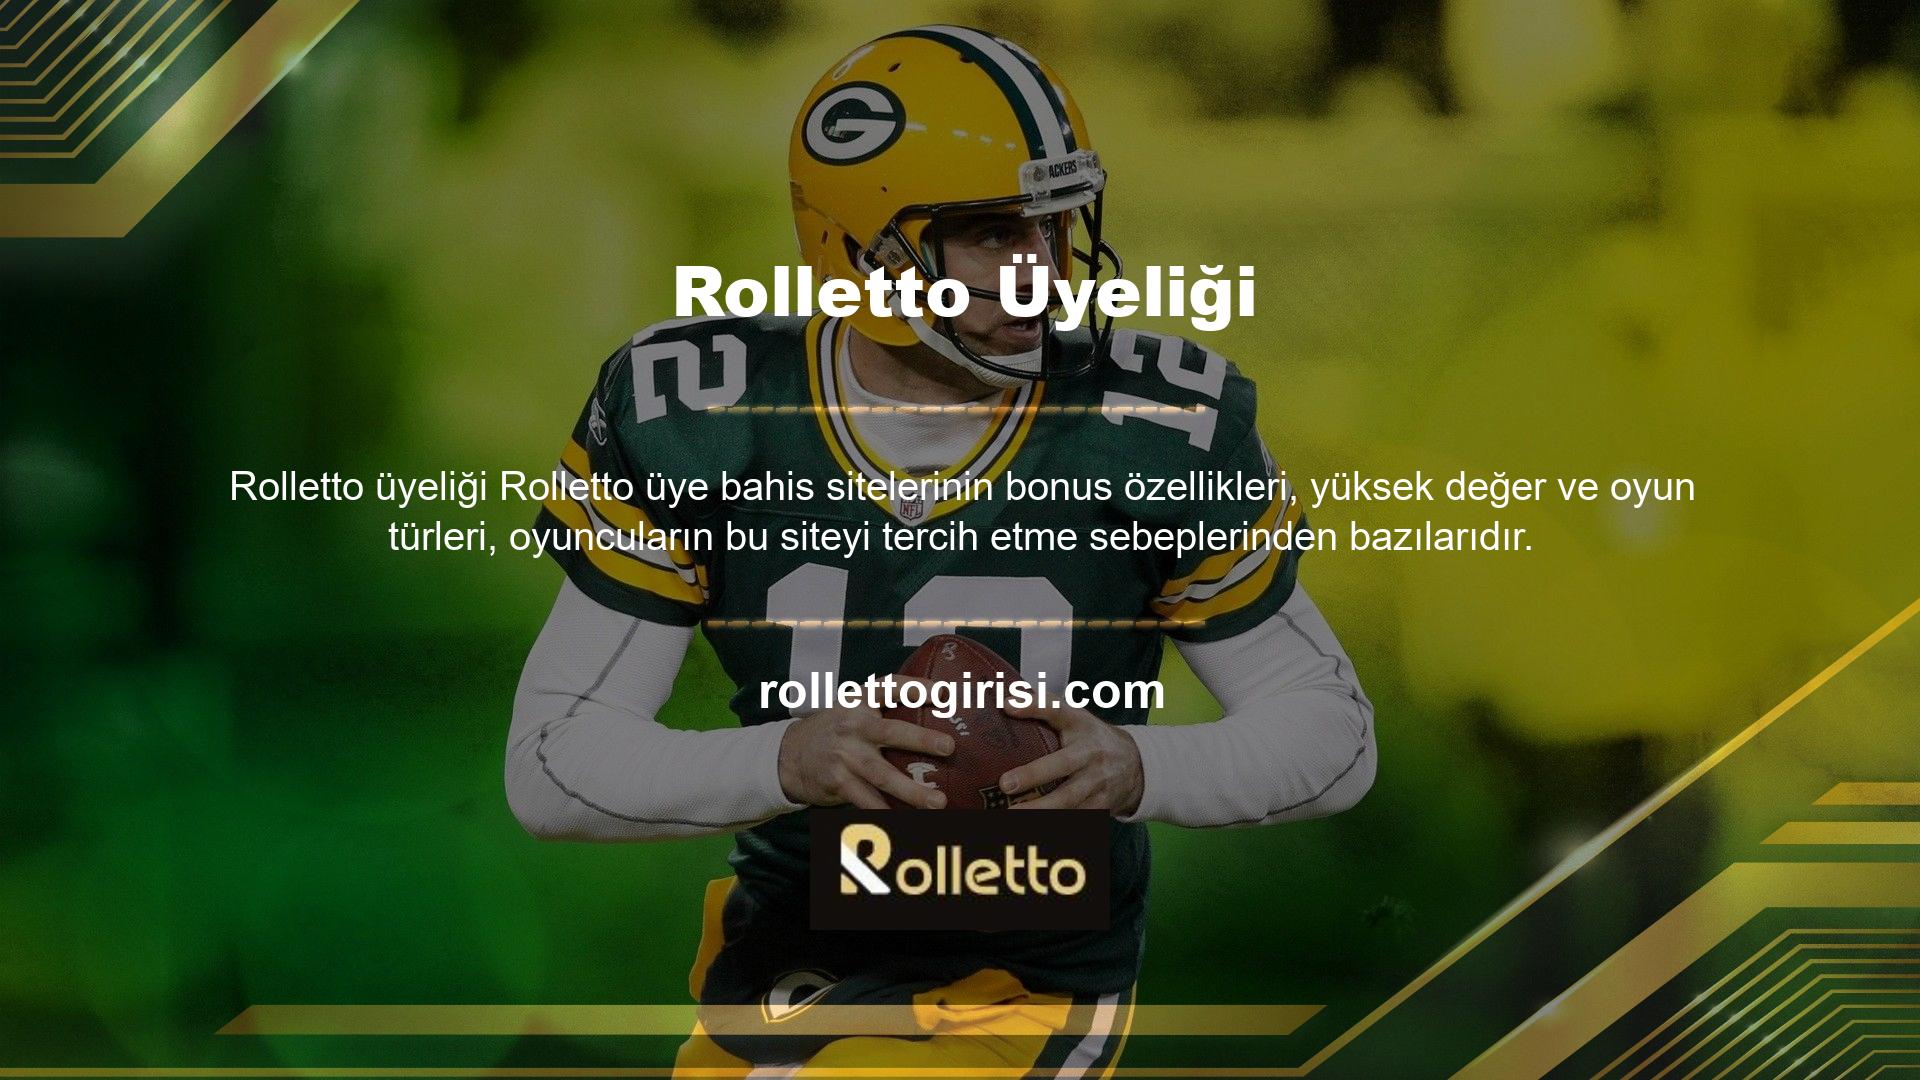 Yetkili bahis şirketlerinden biri olan Rolletto bahis sitesi, kullanıcılarına güvenilir kaynaklar üzerinden hizmet vermektedir